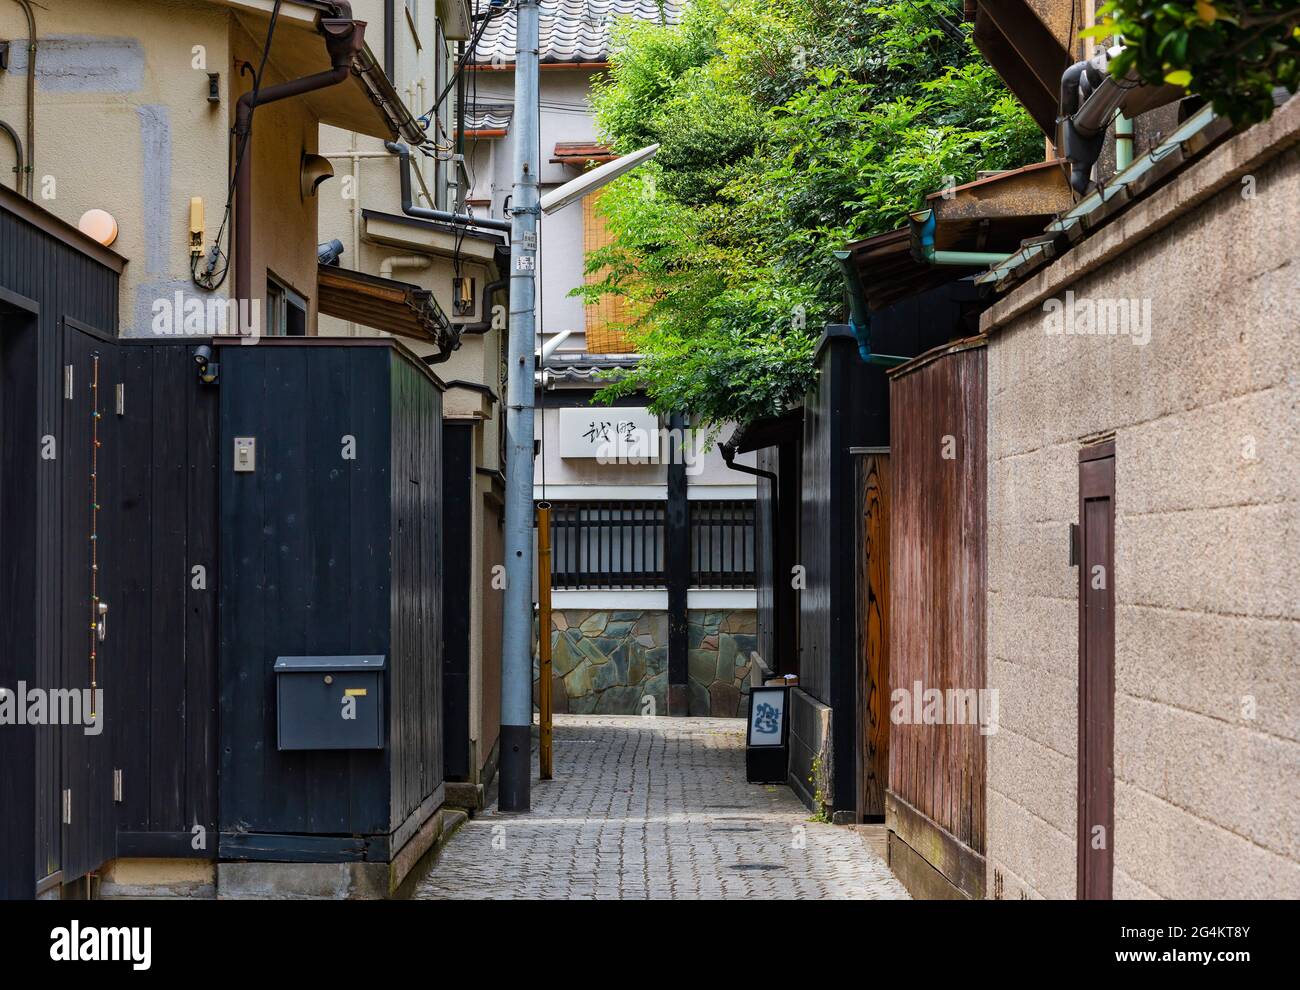 tokio, japón - junio 08 2021: Camino pavimentado estrecho de Kakurenbo yokocho o esconder y buscar callejón en el antiguo distrito rojo de Ushigome Hanamachi con th Foto de stock